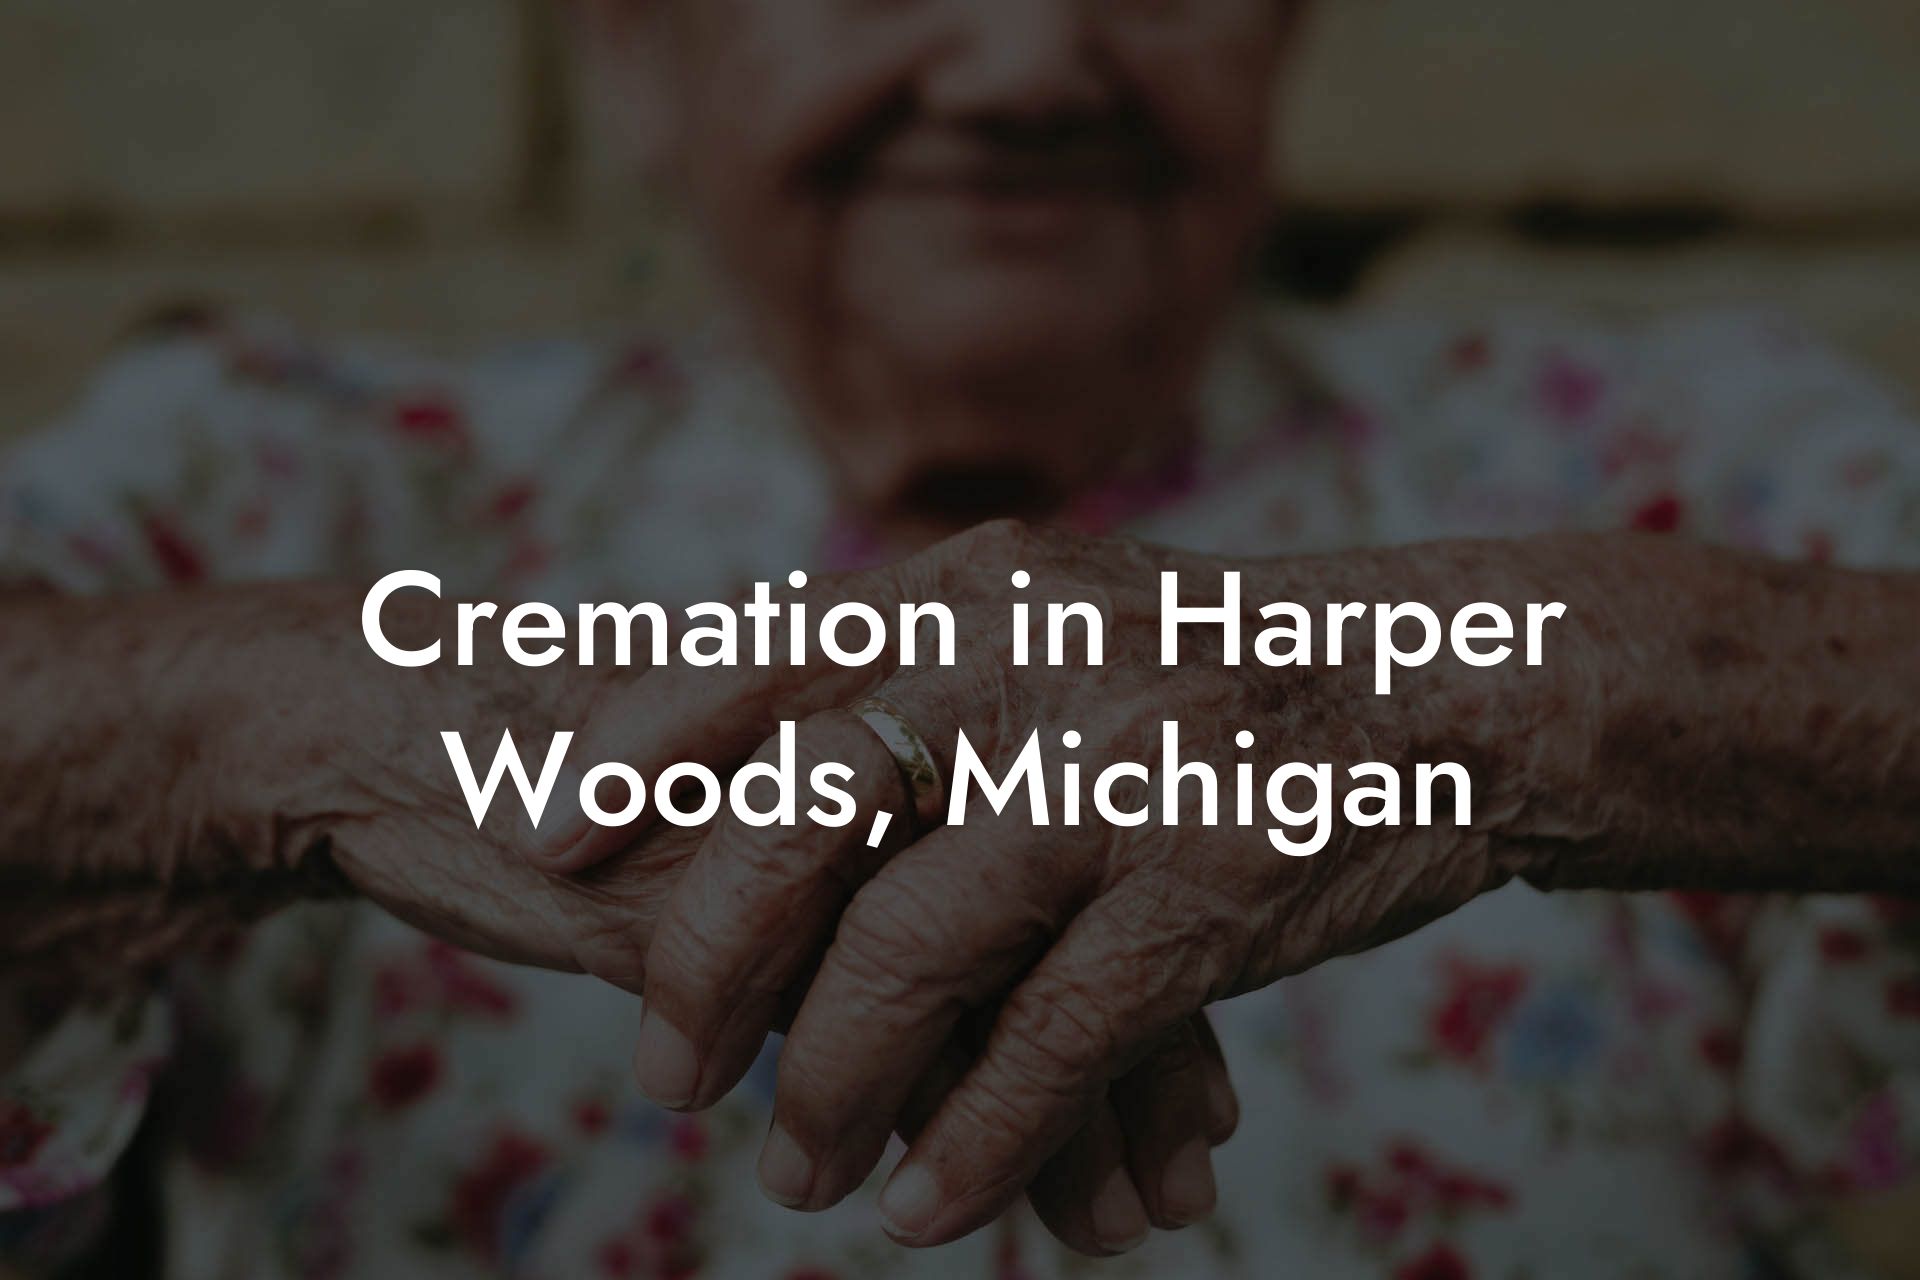 Cremation in Harper Woods, Michigan